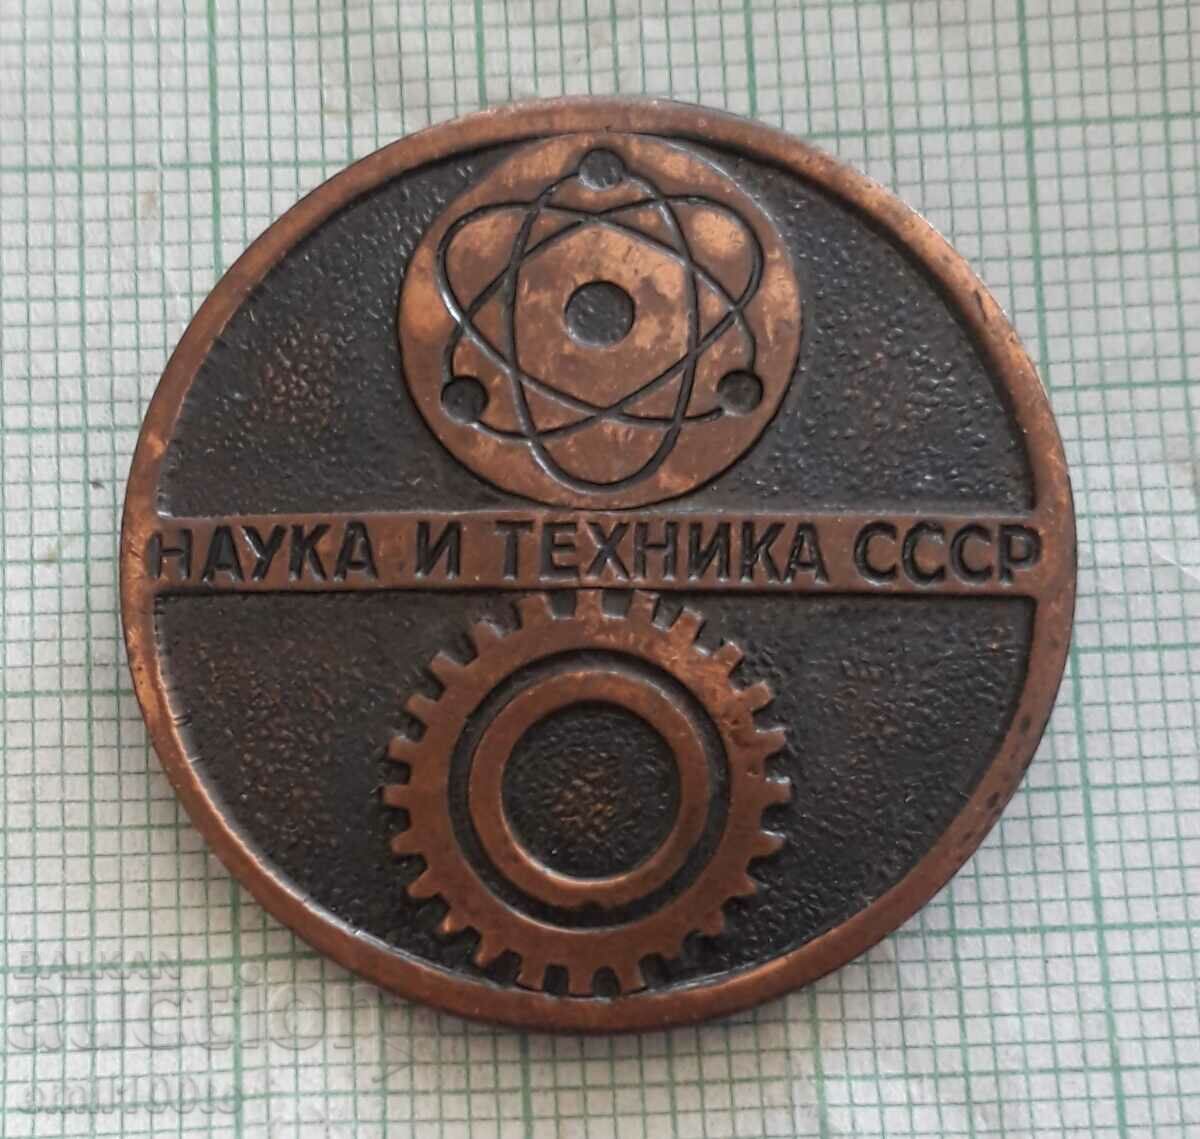 Σήμα - ΕΣΣΔ Επιστήμη και Τεχνολογία